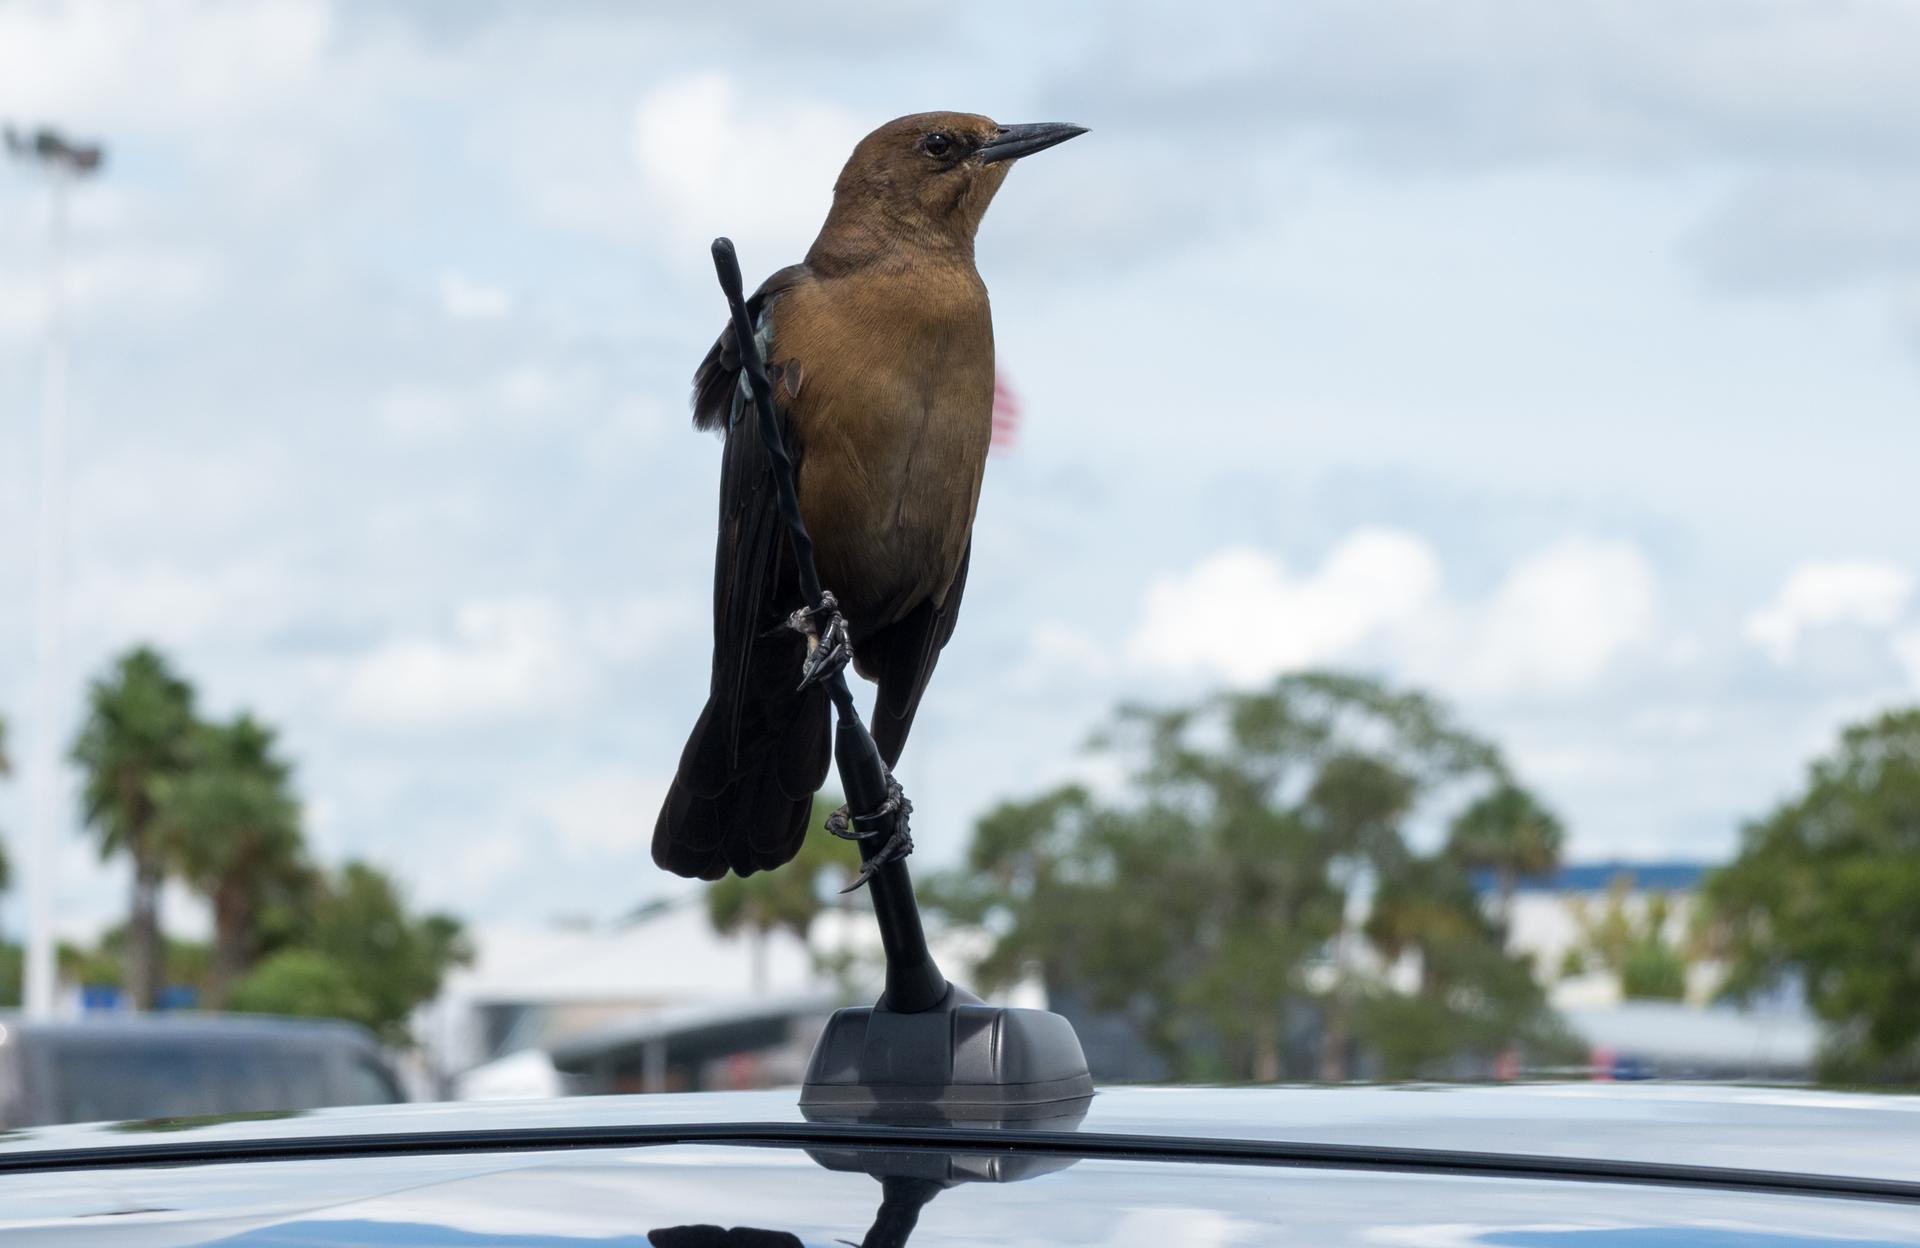 Bird on a car